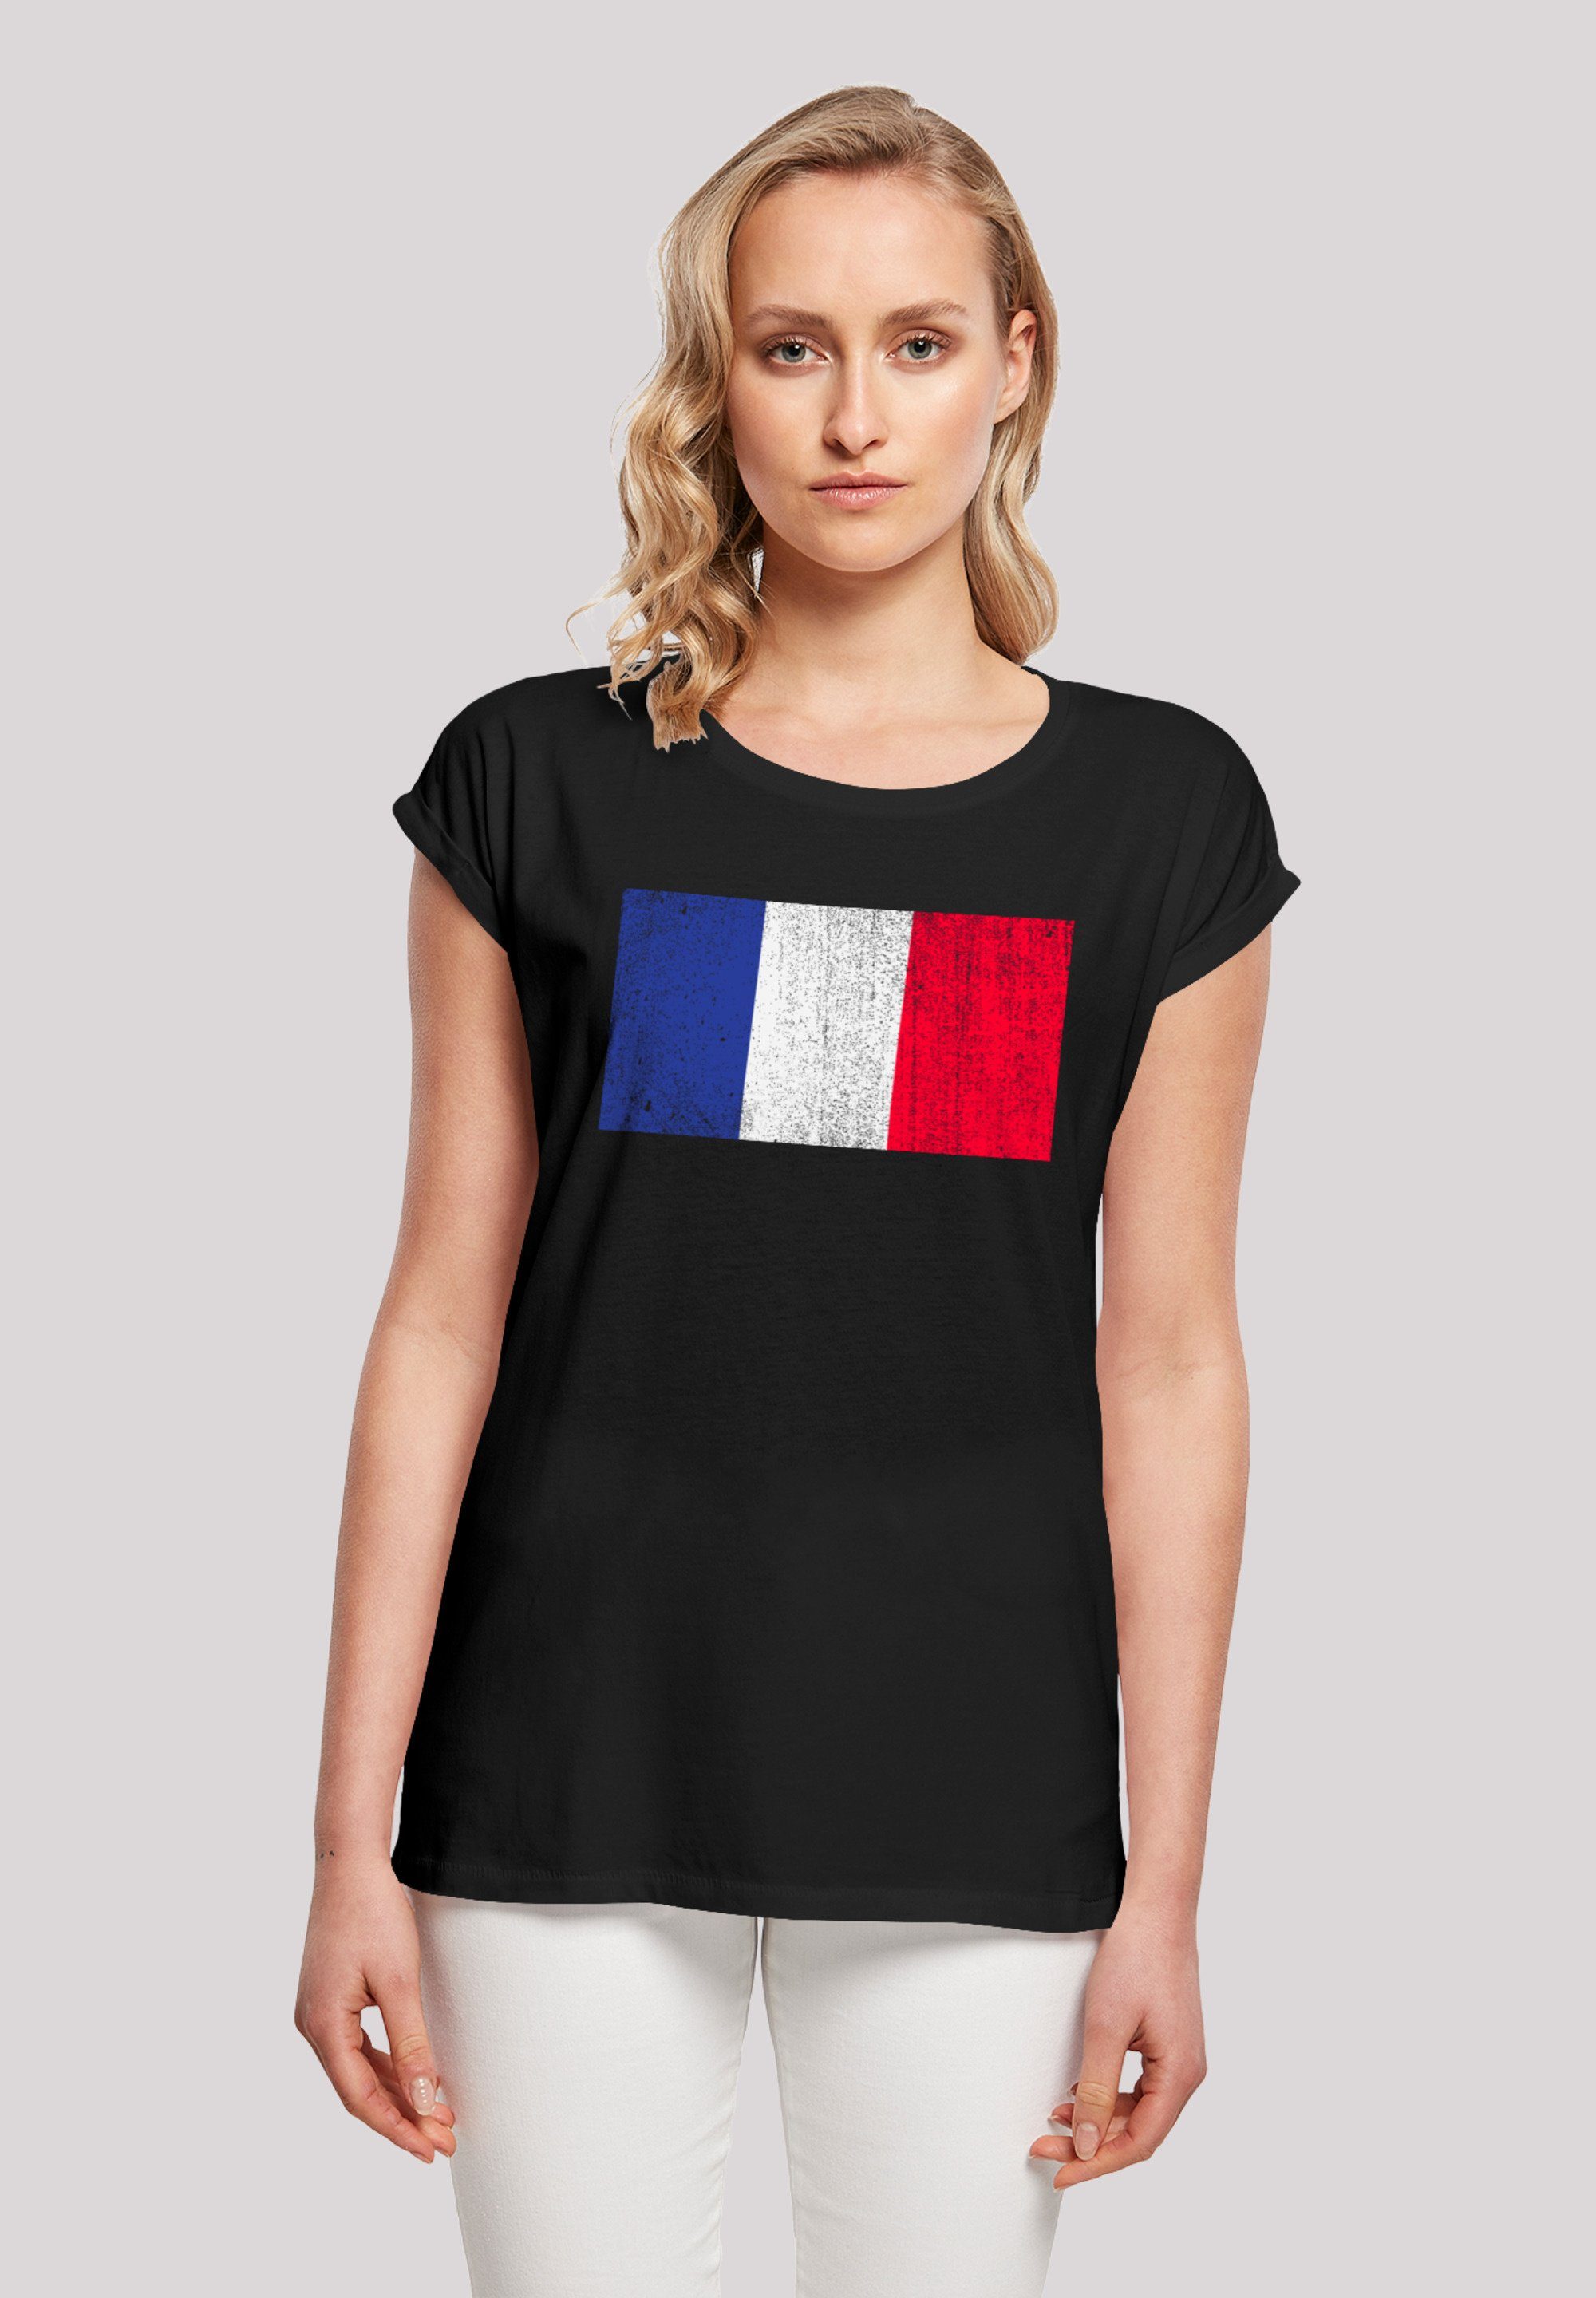 hohem Sehr Flagge Tragekomfort Baumwollstoff F4NT4STIC distressed weicher Frankreich Print, mit France T-Shirt